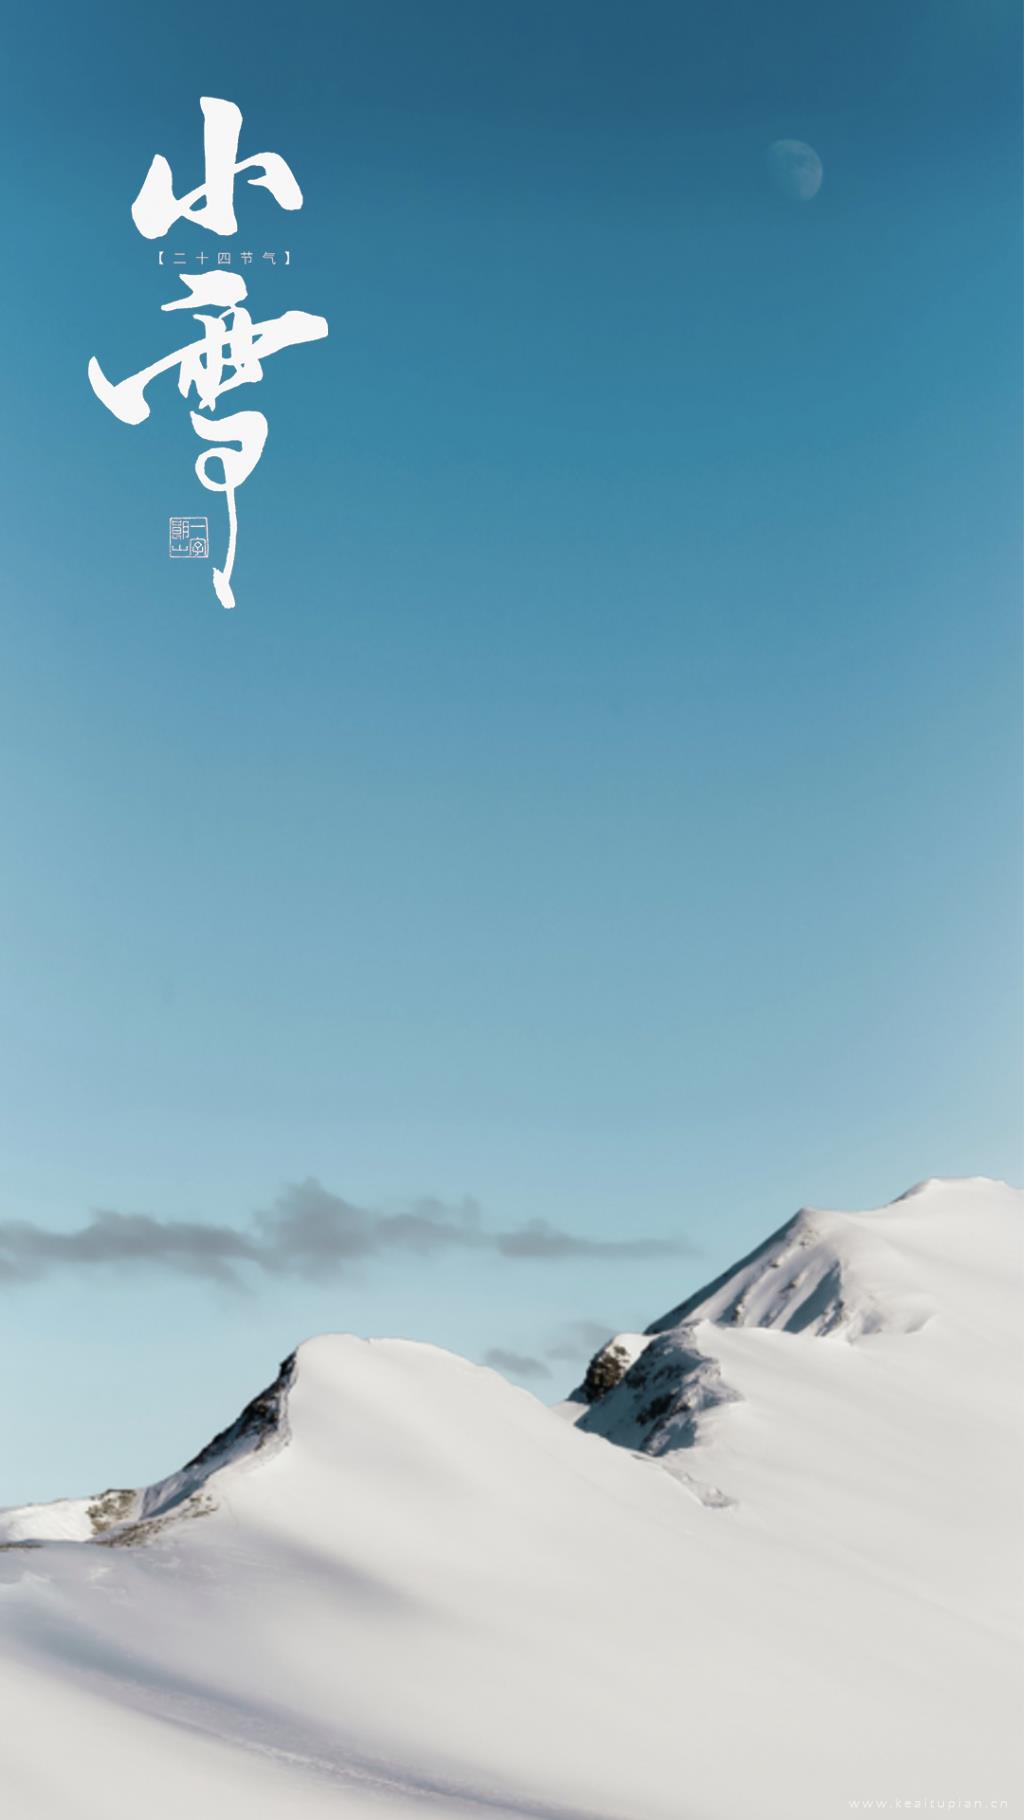 小清新唯美小雪自然优美雪山风景海报图片